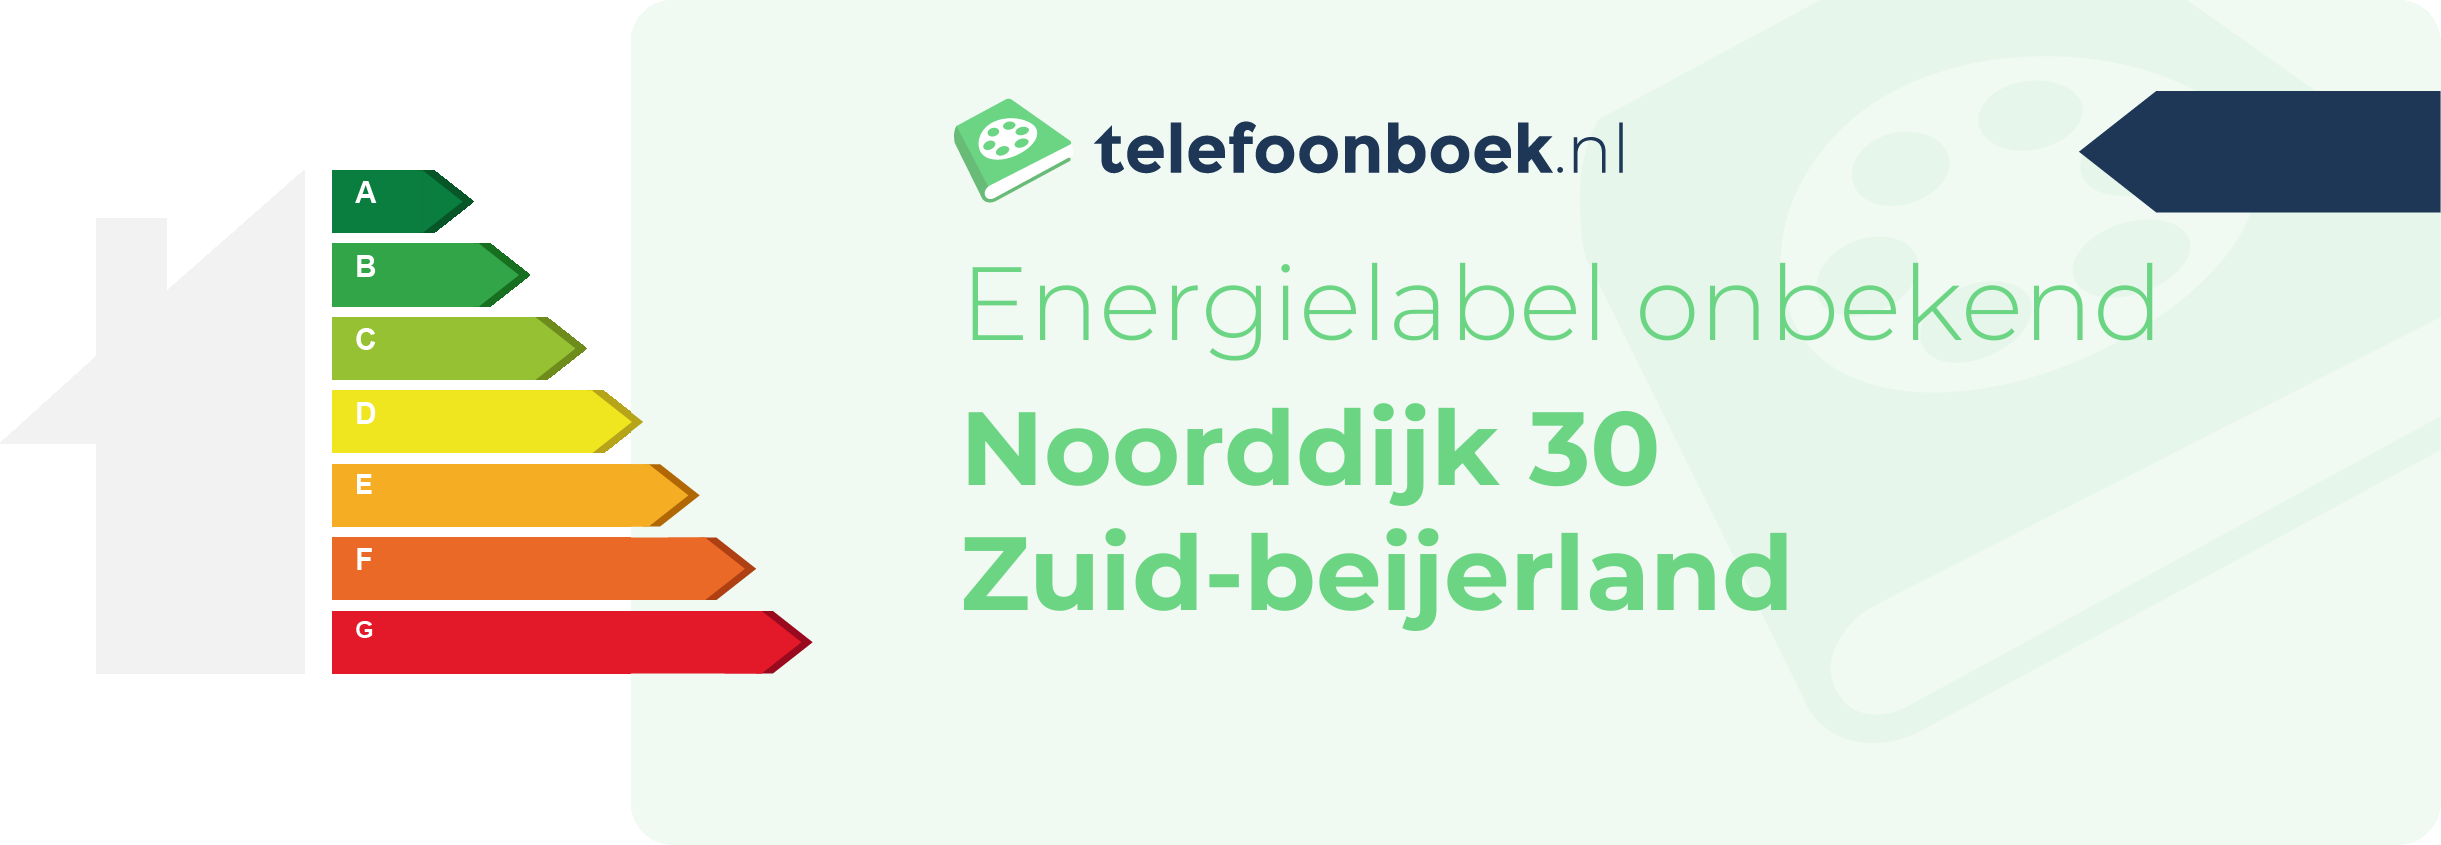 Energielabel Noorddijk 30 Zuid-Beijerland